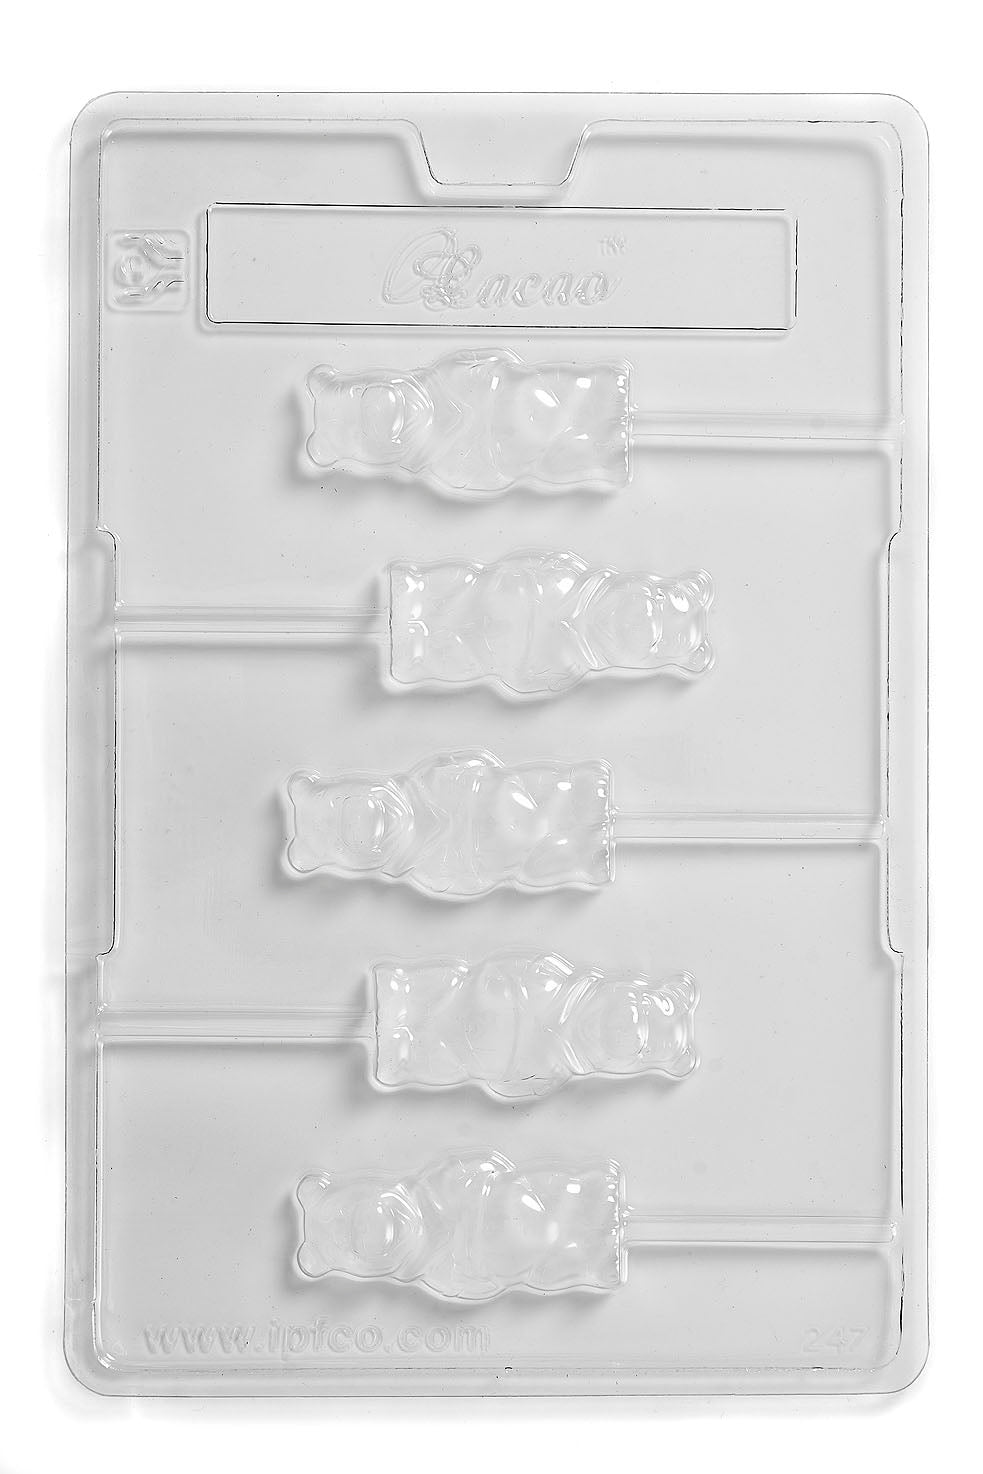 Stampo in PVC Teddy Bear Lolly cioccolato/dolce/sapone/gesso (5 cavità)